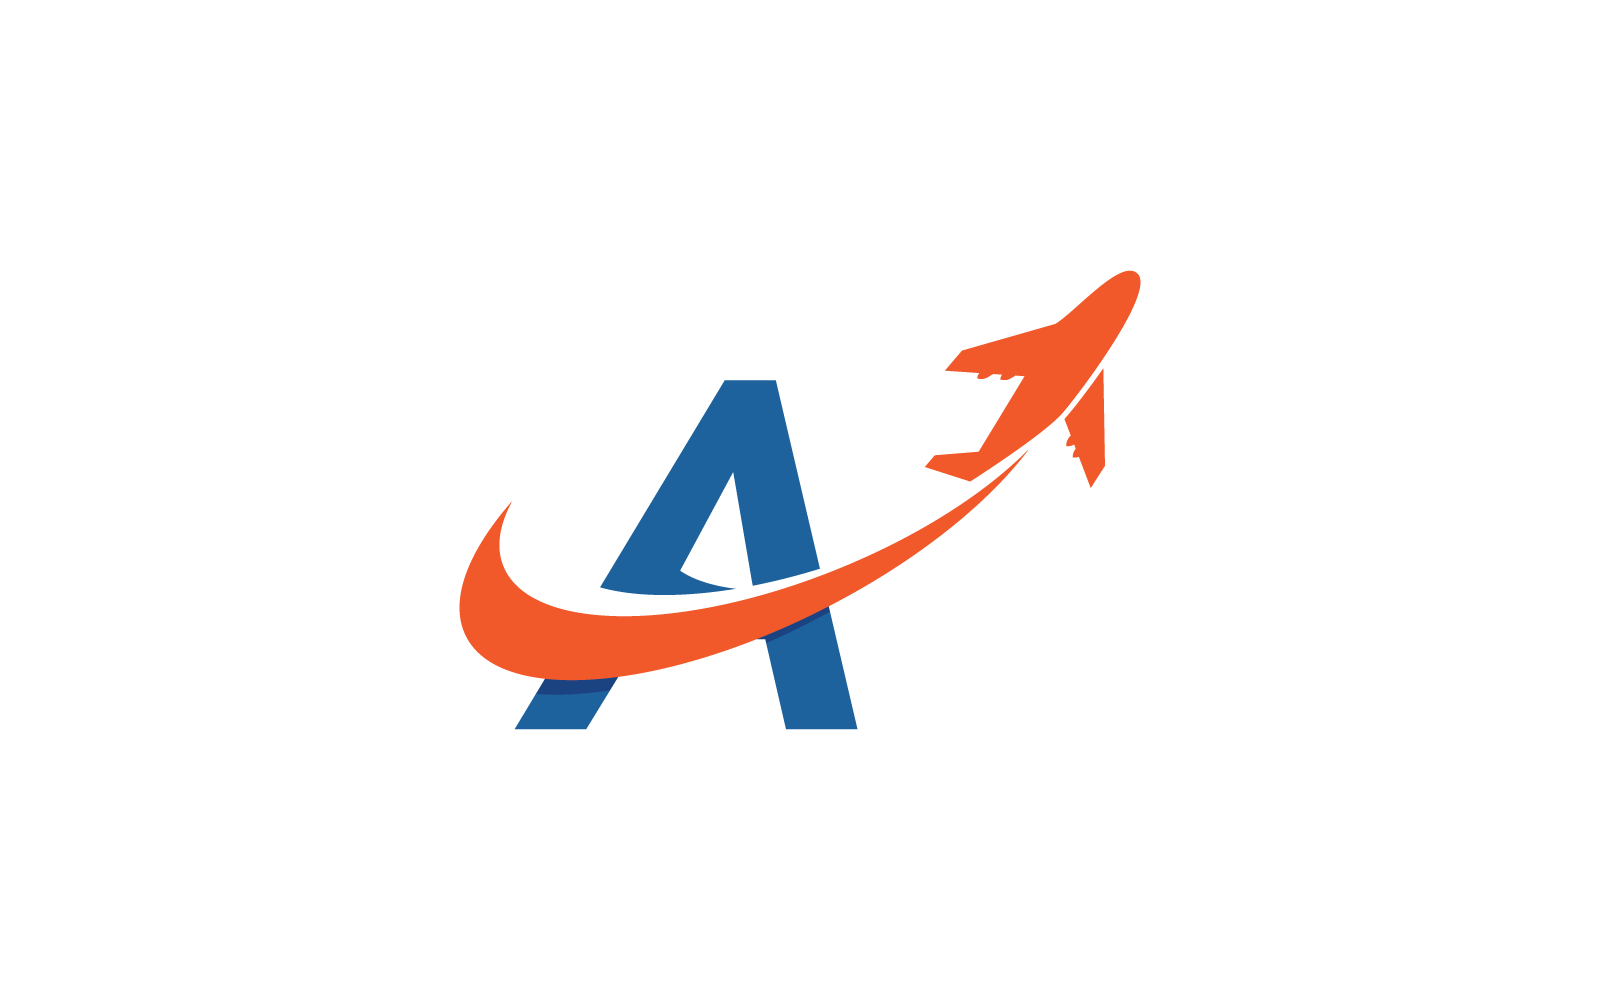 İlk logo vektör şablonuna sahip Hava Uçağı